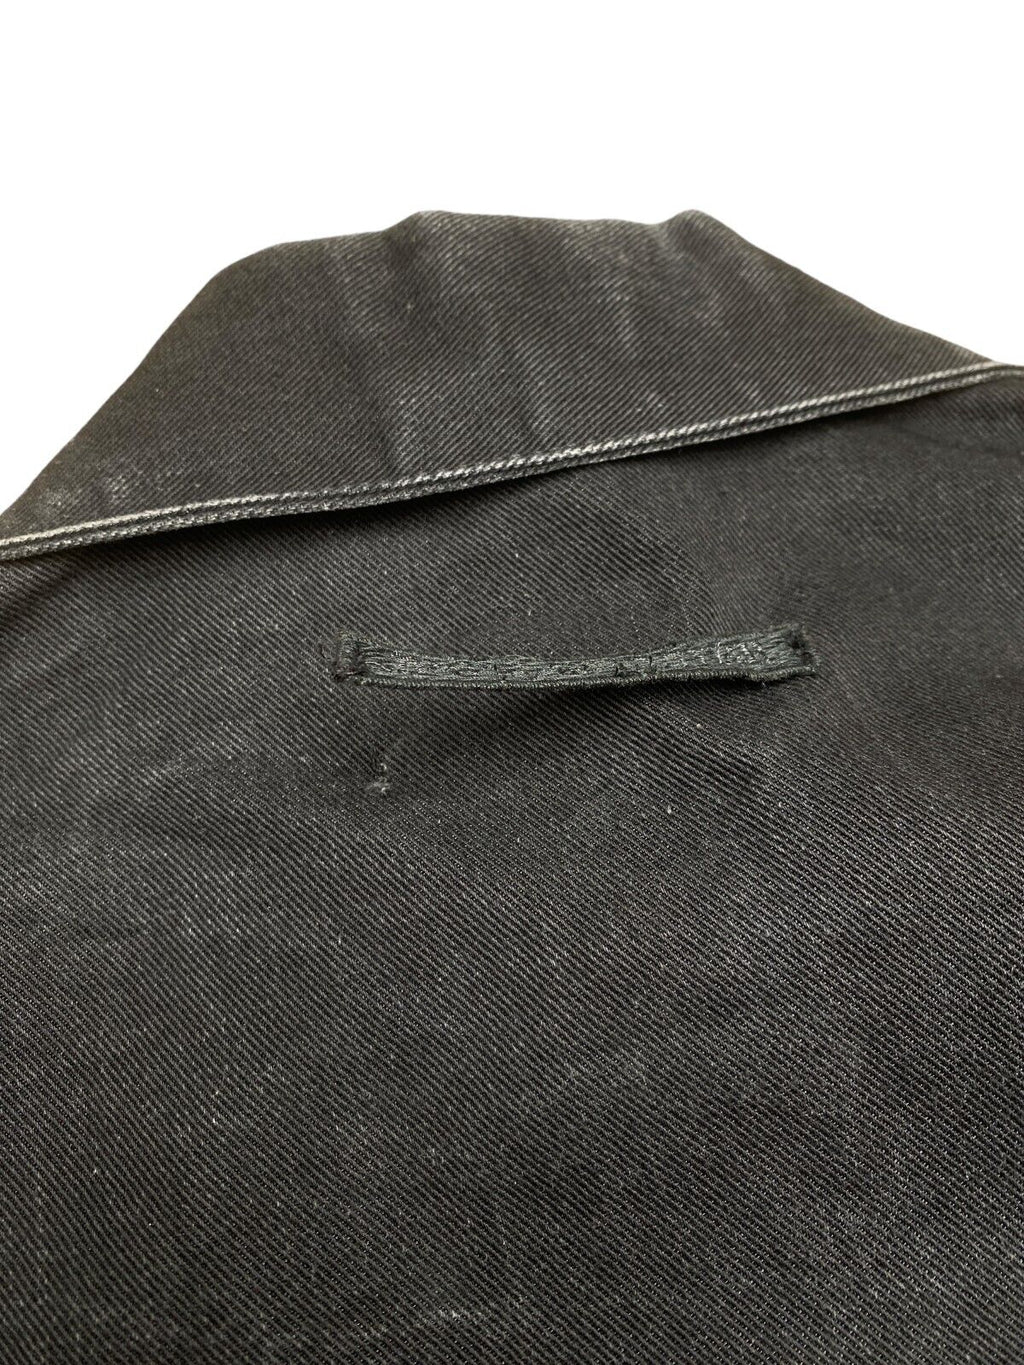 Vintage Black denim jacket